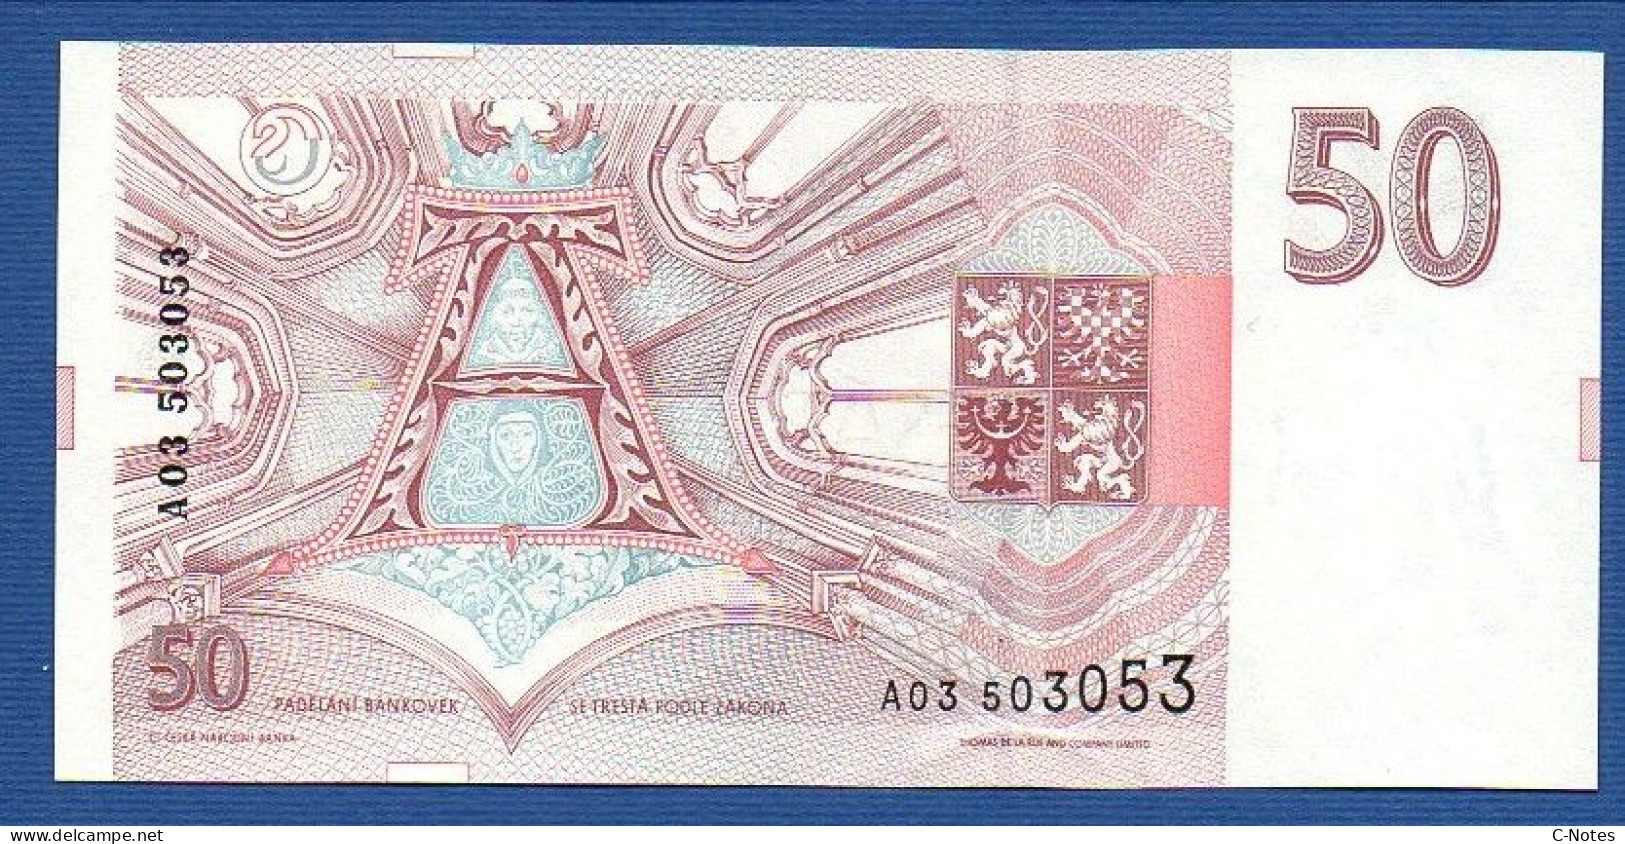 CZECHIA - CZECH Republic - P. 4 – 50 Korun 1993  UNC, S/n A03 503053 - Tschechien